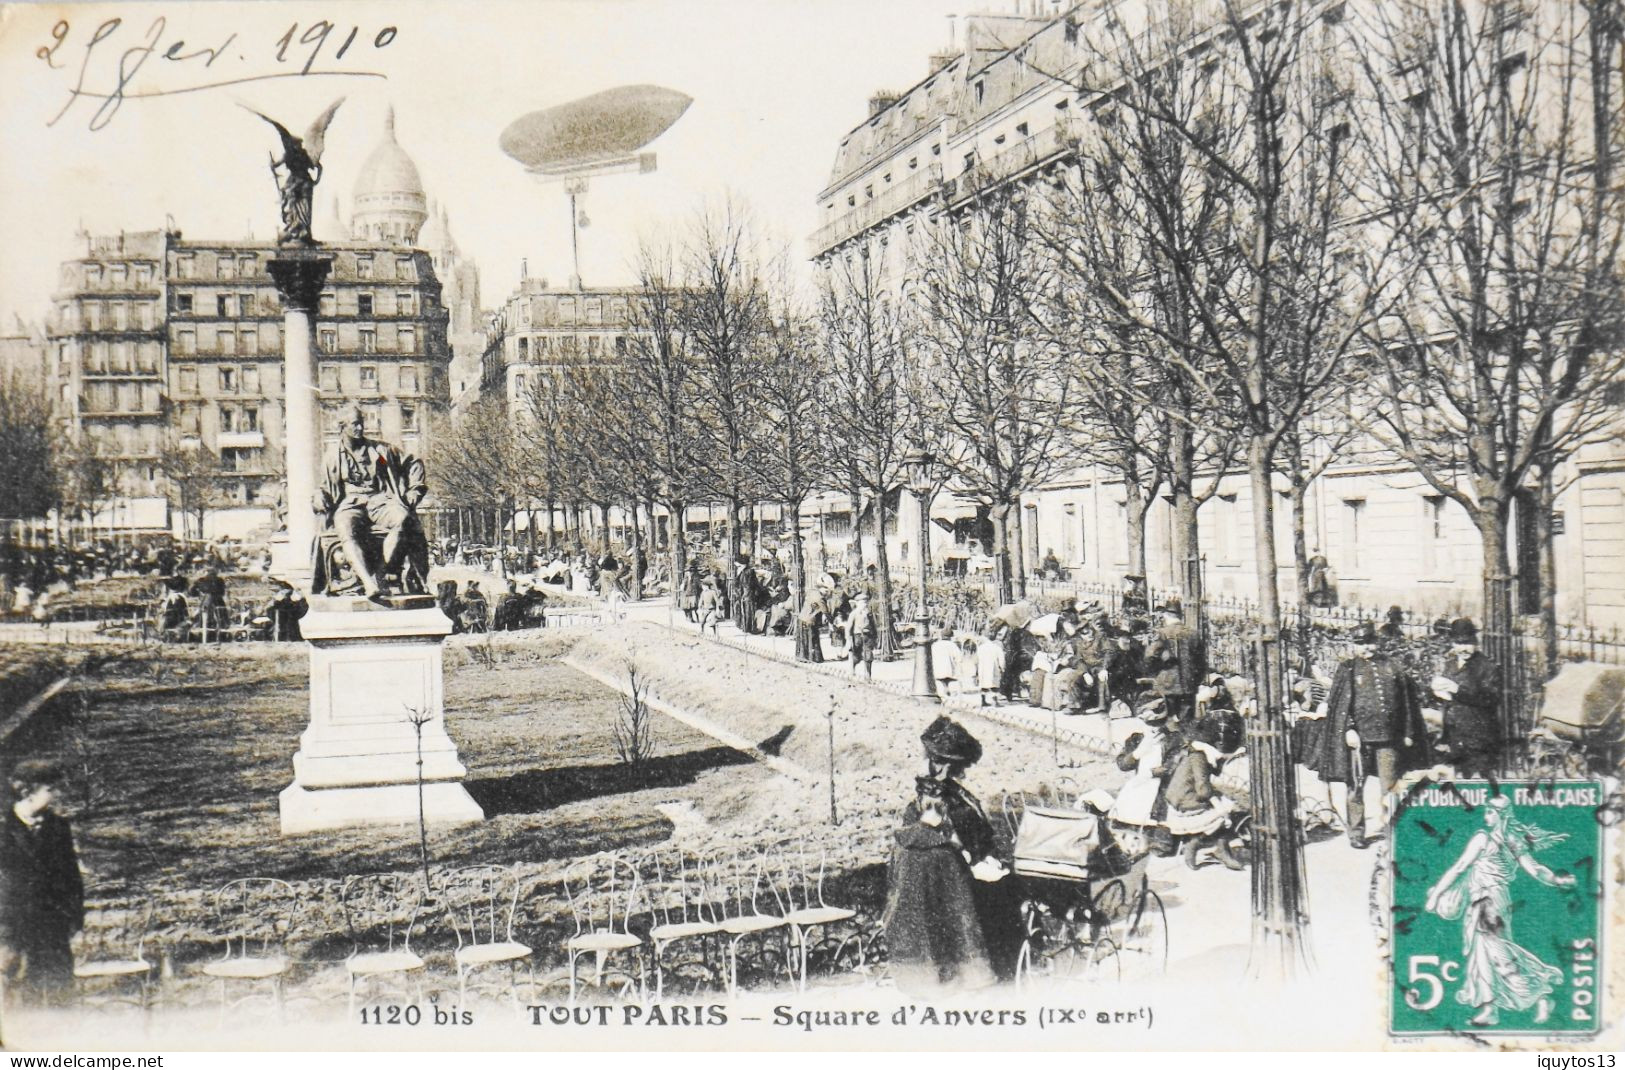 CPA. [75] > TOUT PARIS > N° 1120 Bis - Square D'Anvers - Belle Animation - (IXe Arrt.) - 1910 - TBE - Paris (09)